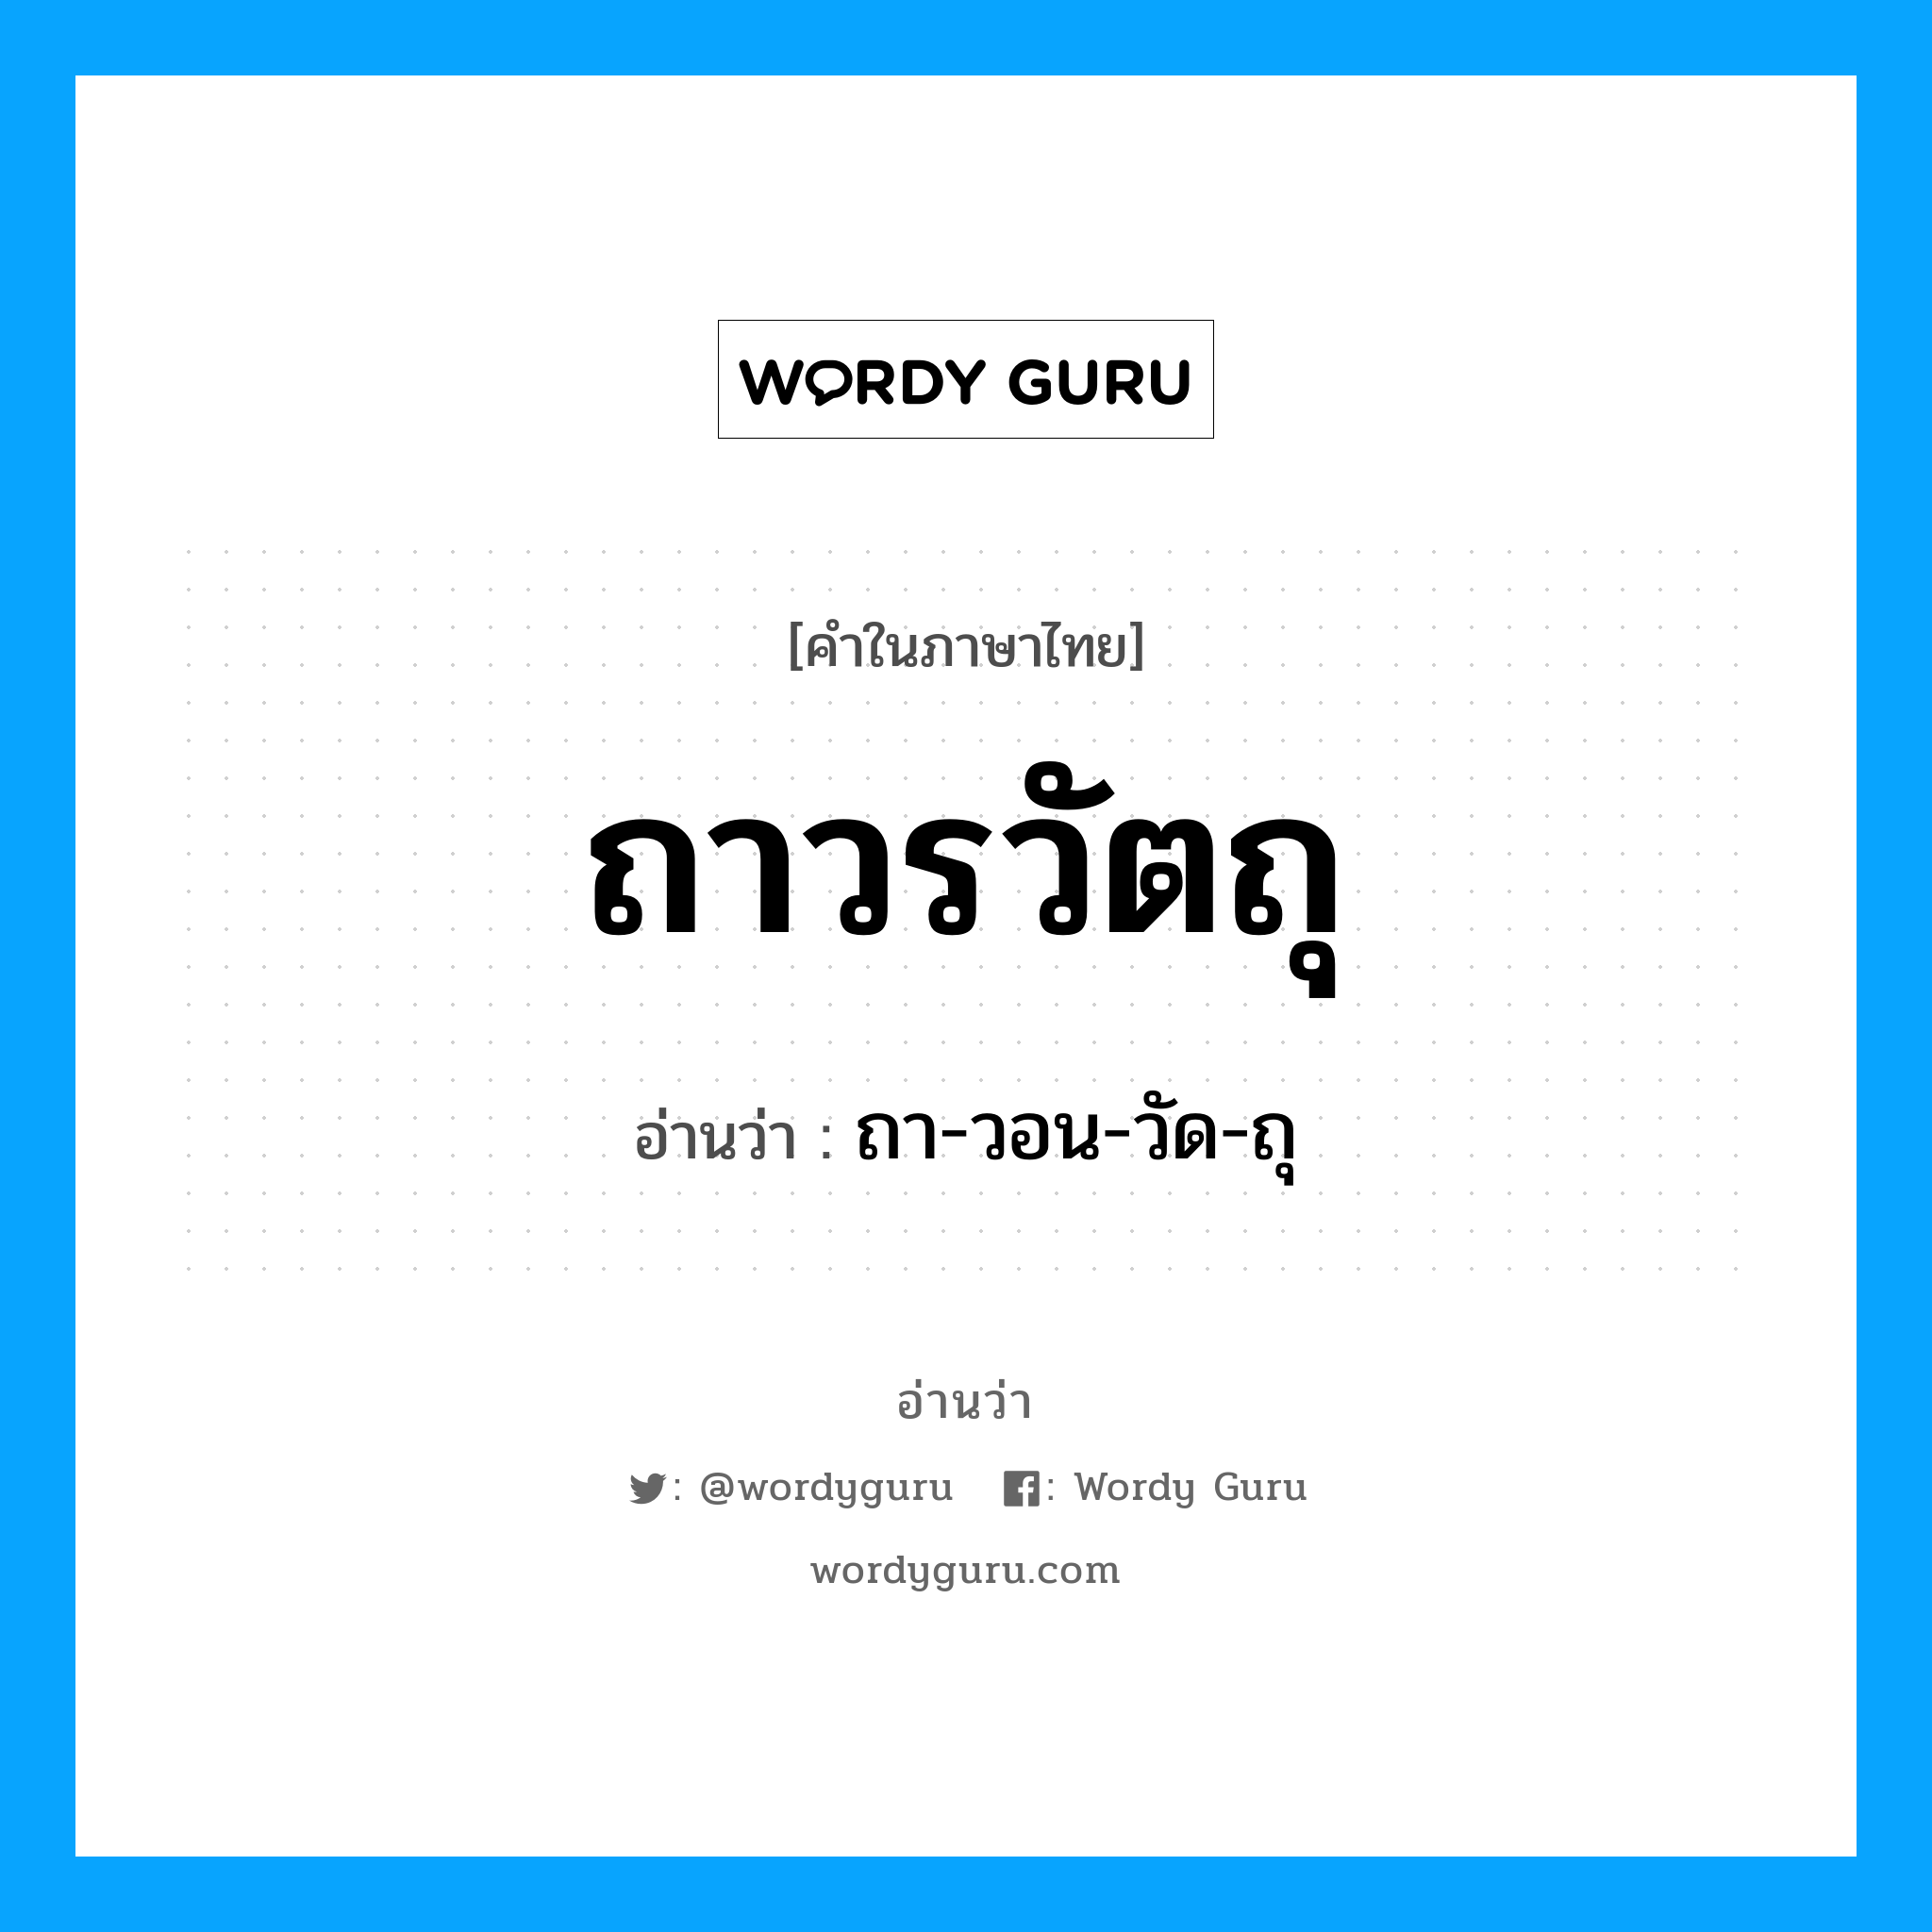 ถา-วอน-วัด-ถุ เป็นคำอ่านของคำไหน?, คำในภาษาไทย ถา-วอน-วัด-ถุ อ่านว่า ถาวรวัตถุ